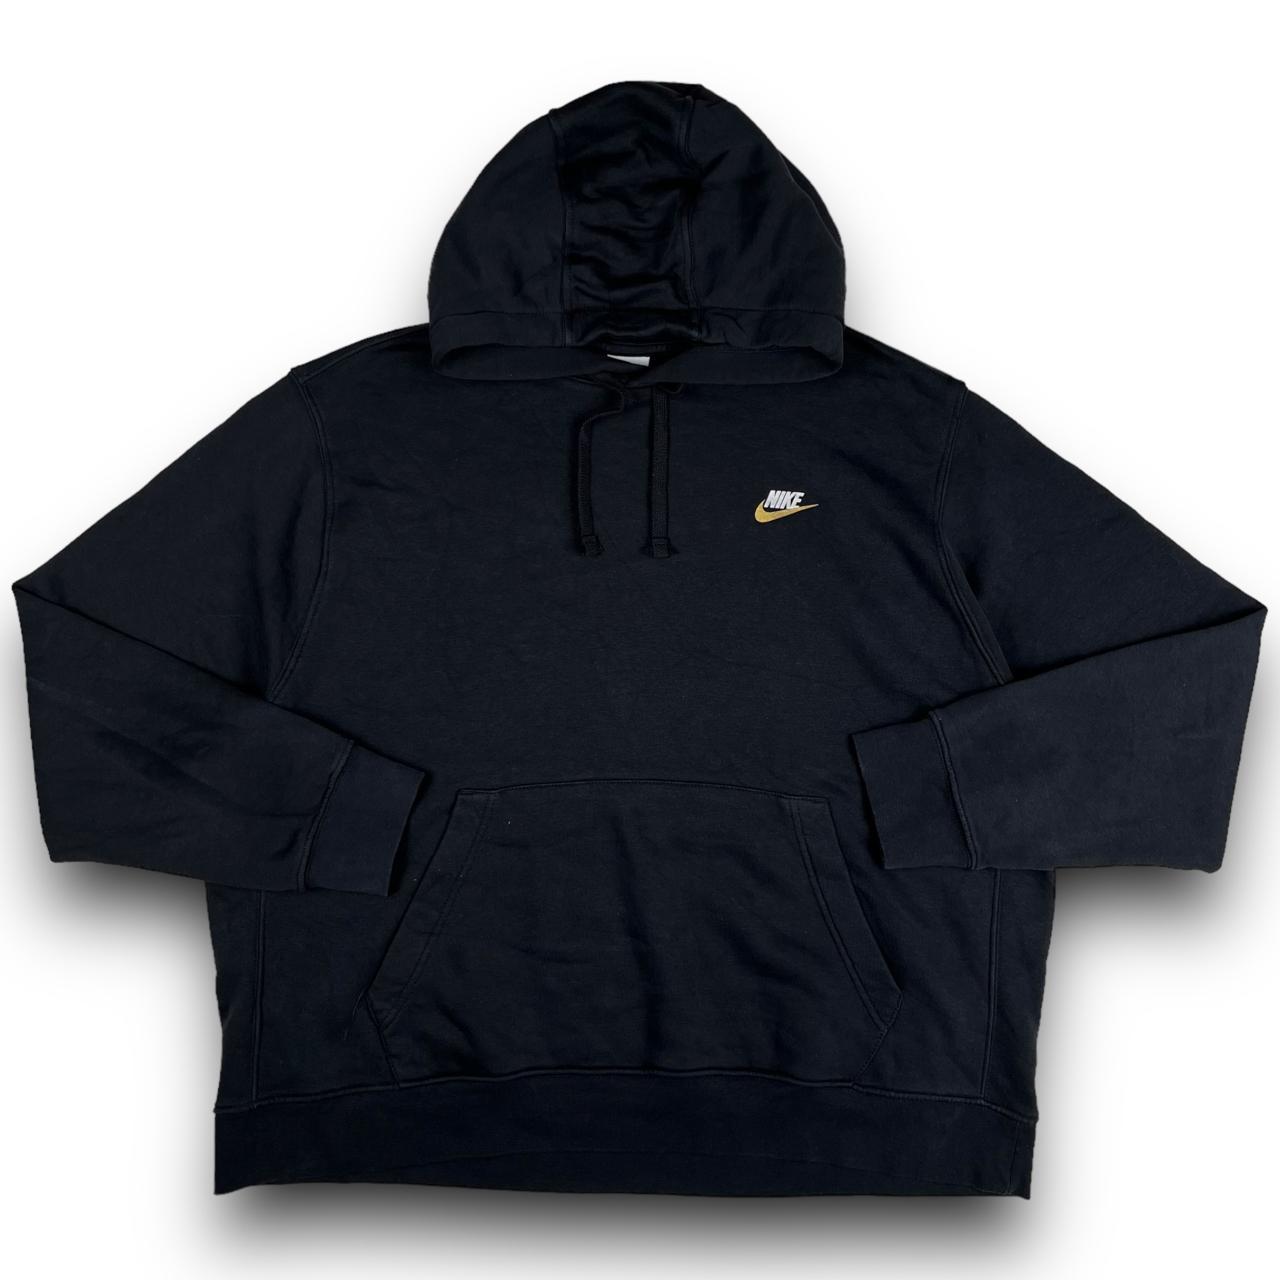 Nike Club Black Hoodie (XL) Classic Nike hoodie in... - Depop